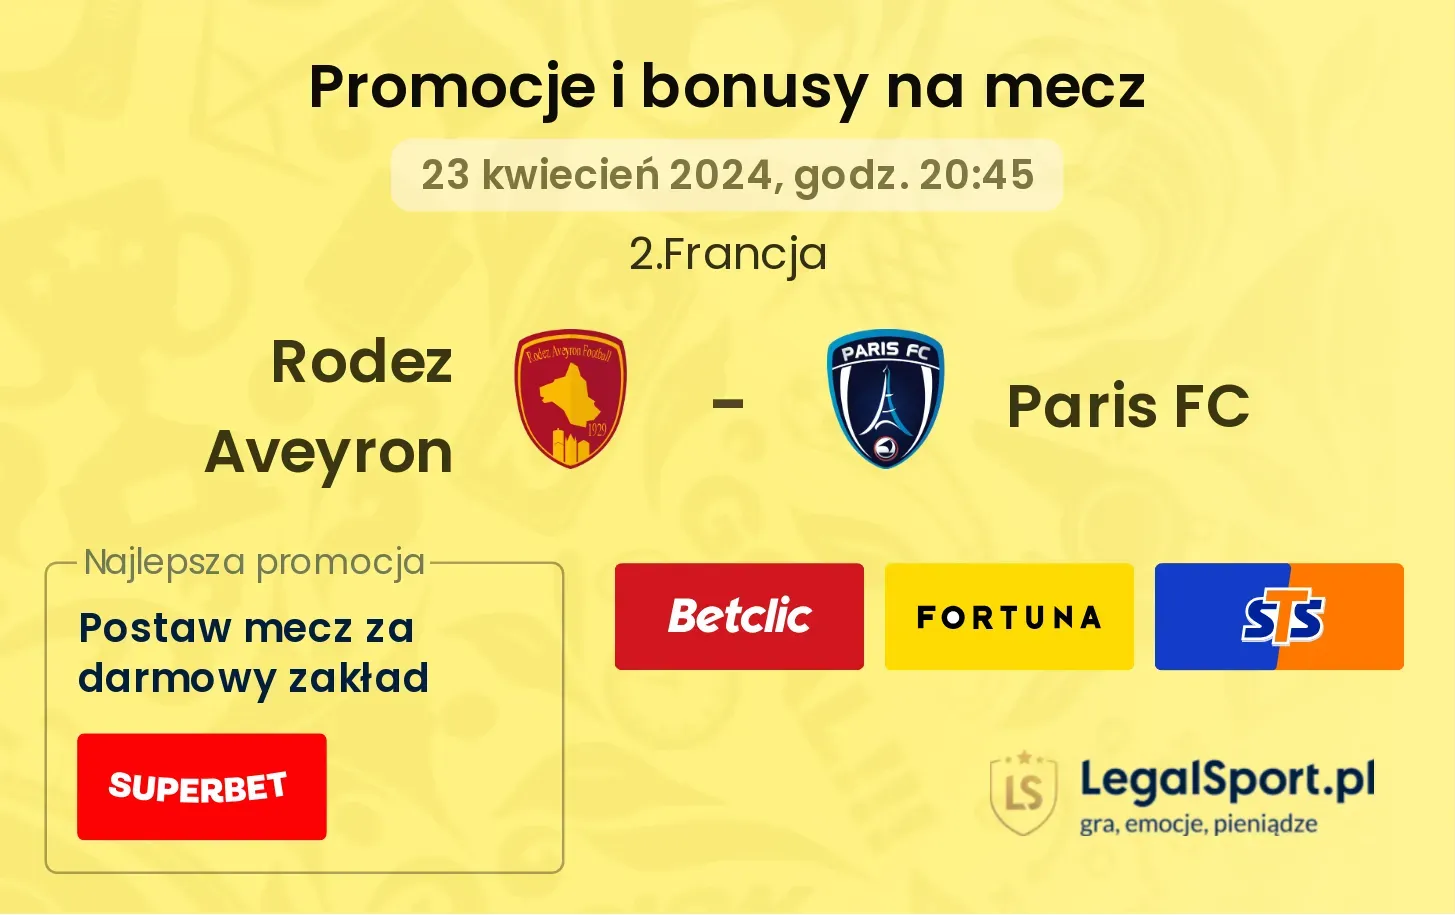 Rodez Aveyron - Paris FC promocje bonusy na mecz